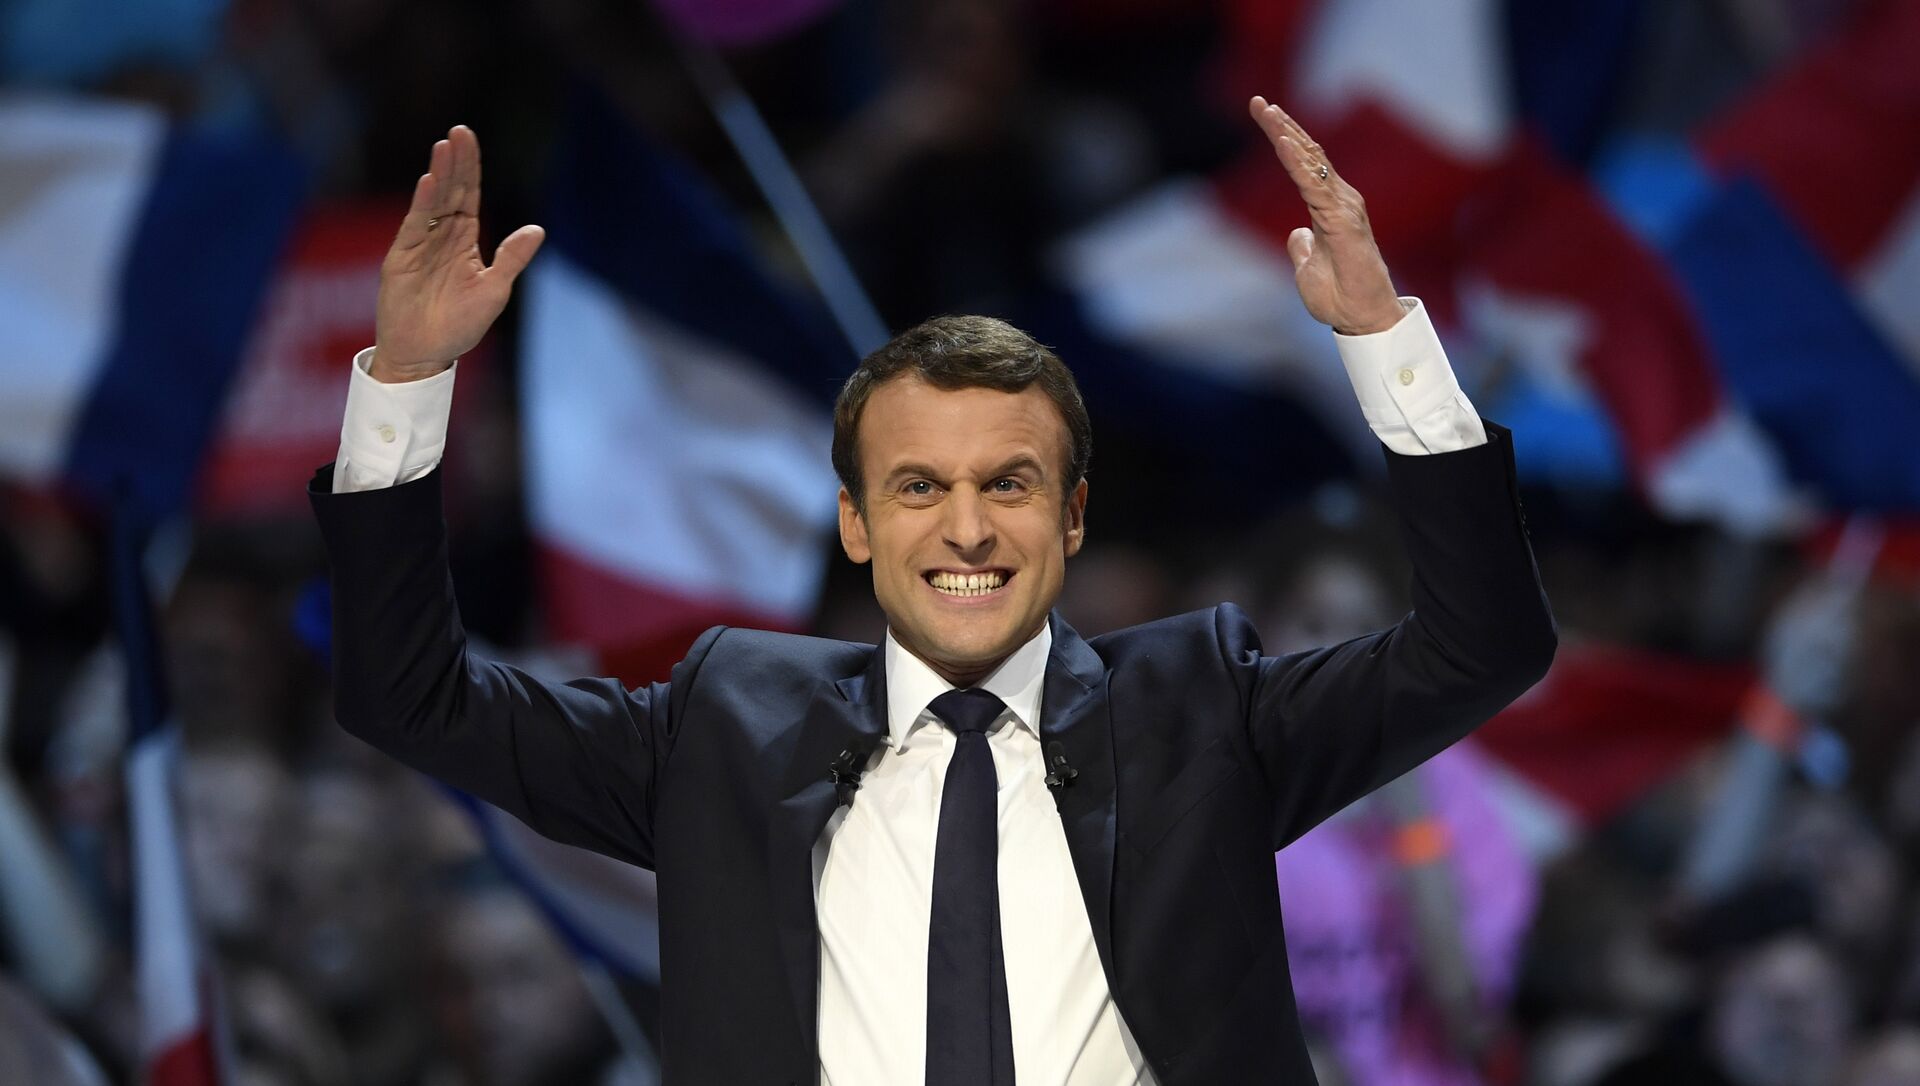 34岁！马克龙任命法国最年轻的总理 - 周末画报